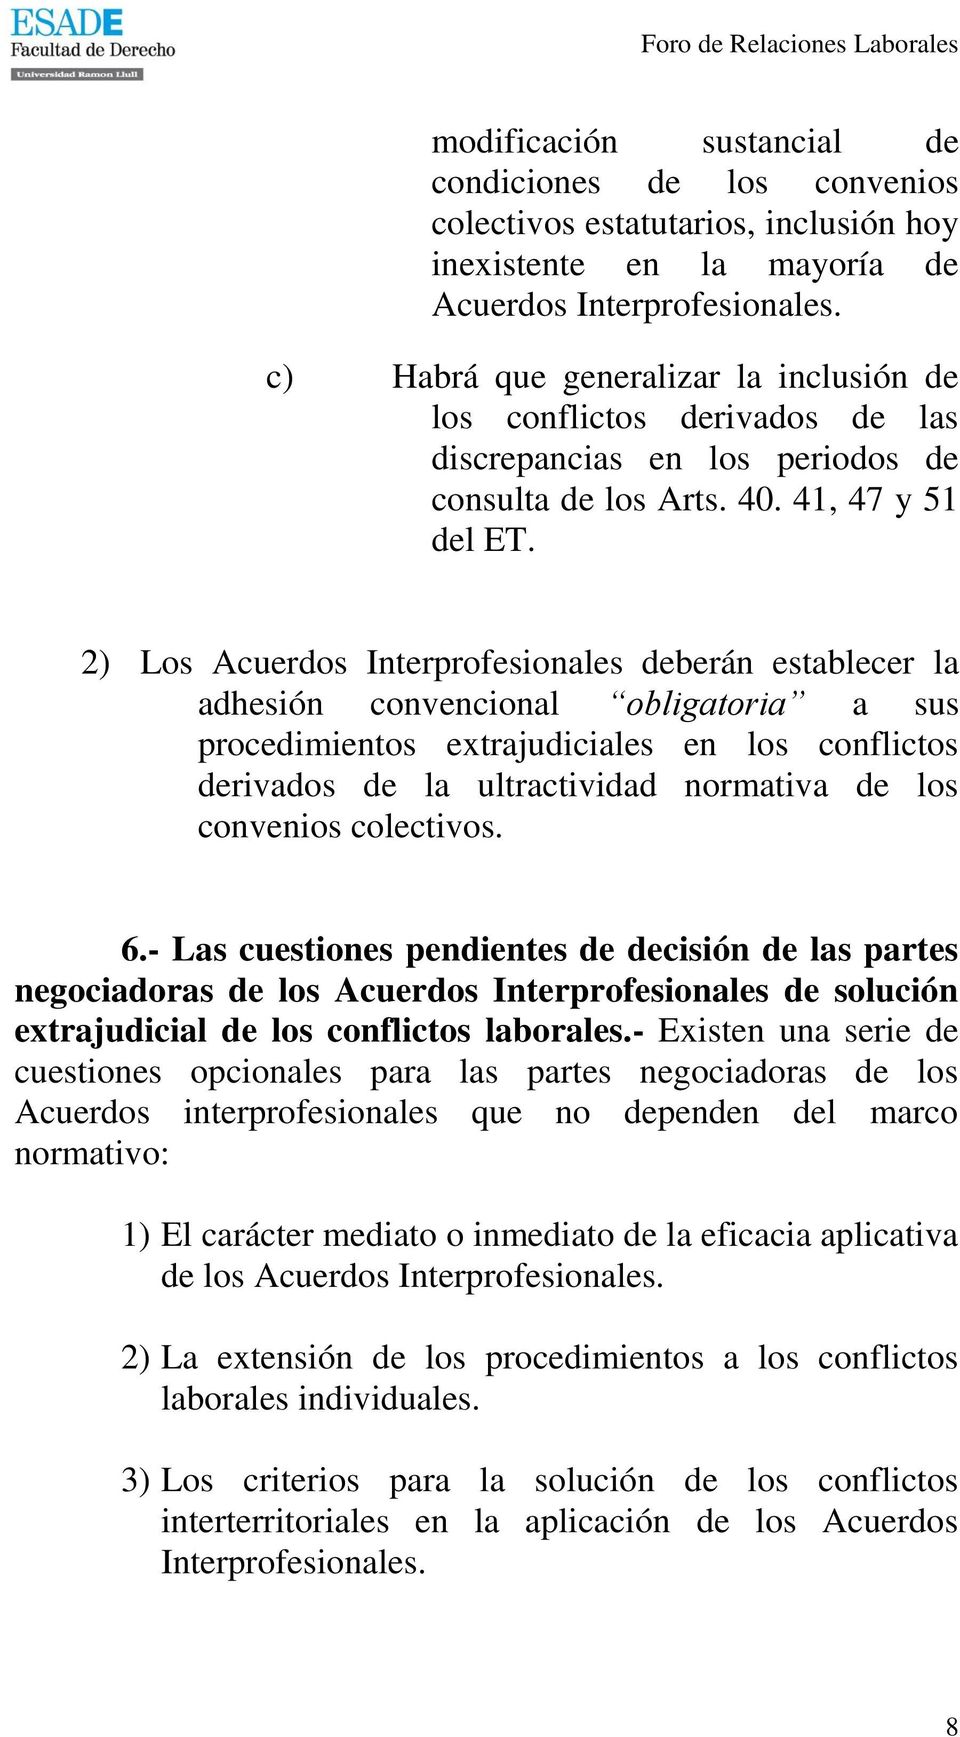 2) Los Acuerdos Interprofesionales deberán establecer la adhesión convencional obligatoria a sus procedimientos extrajudiciales en los conflictos derivados de la ultractividad normativa de los